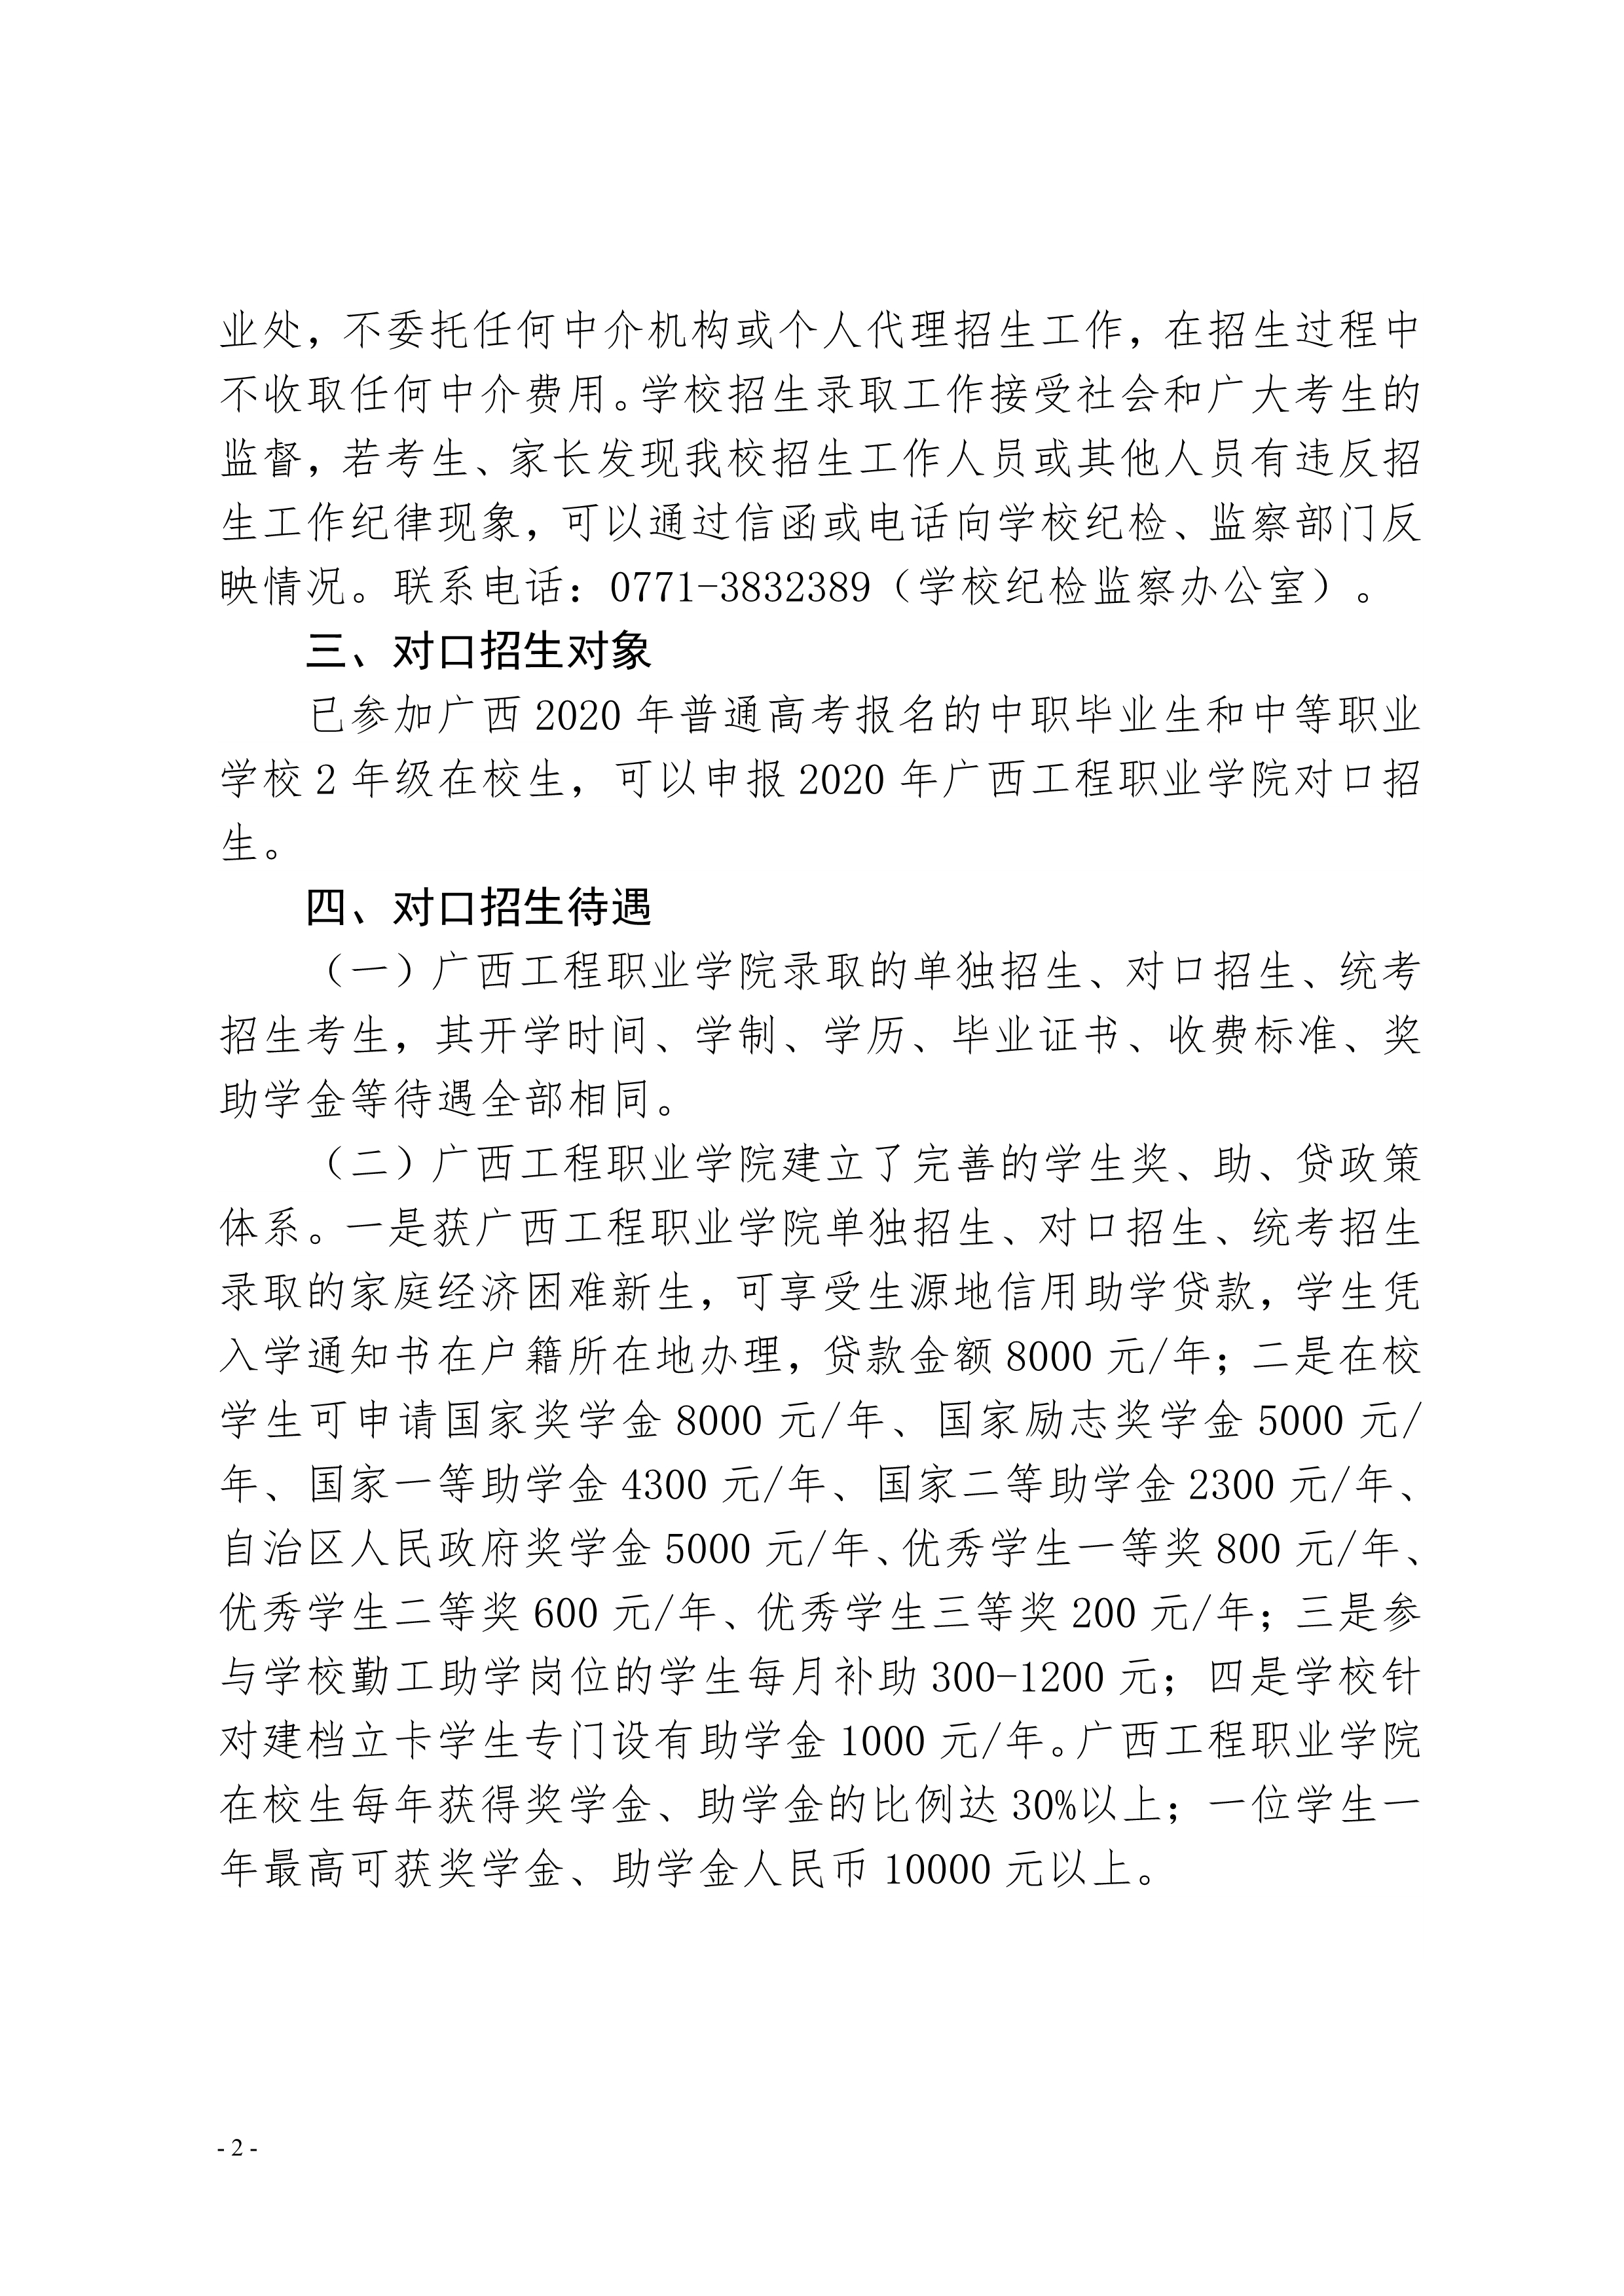 广西工程职业学院2020年对口自主招生简章